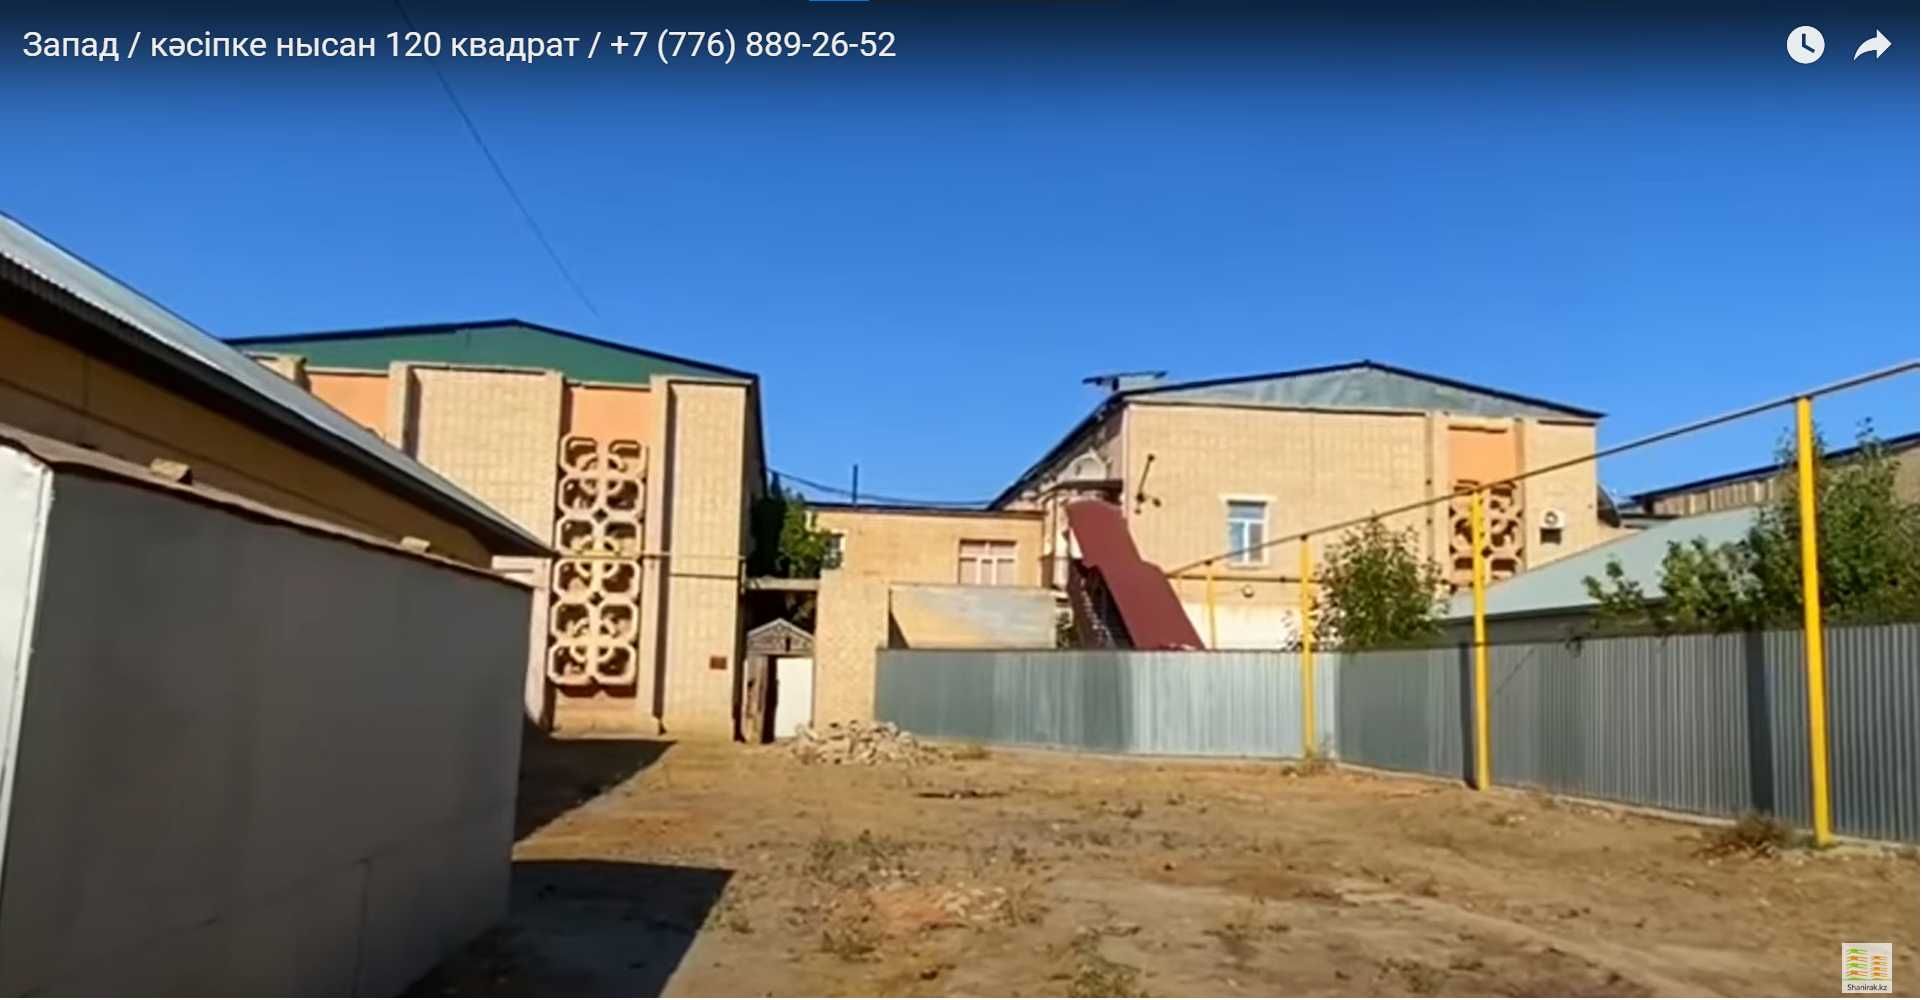 Срочно продаётся квартира с земельным участком городе Кызылорда